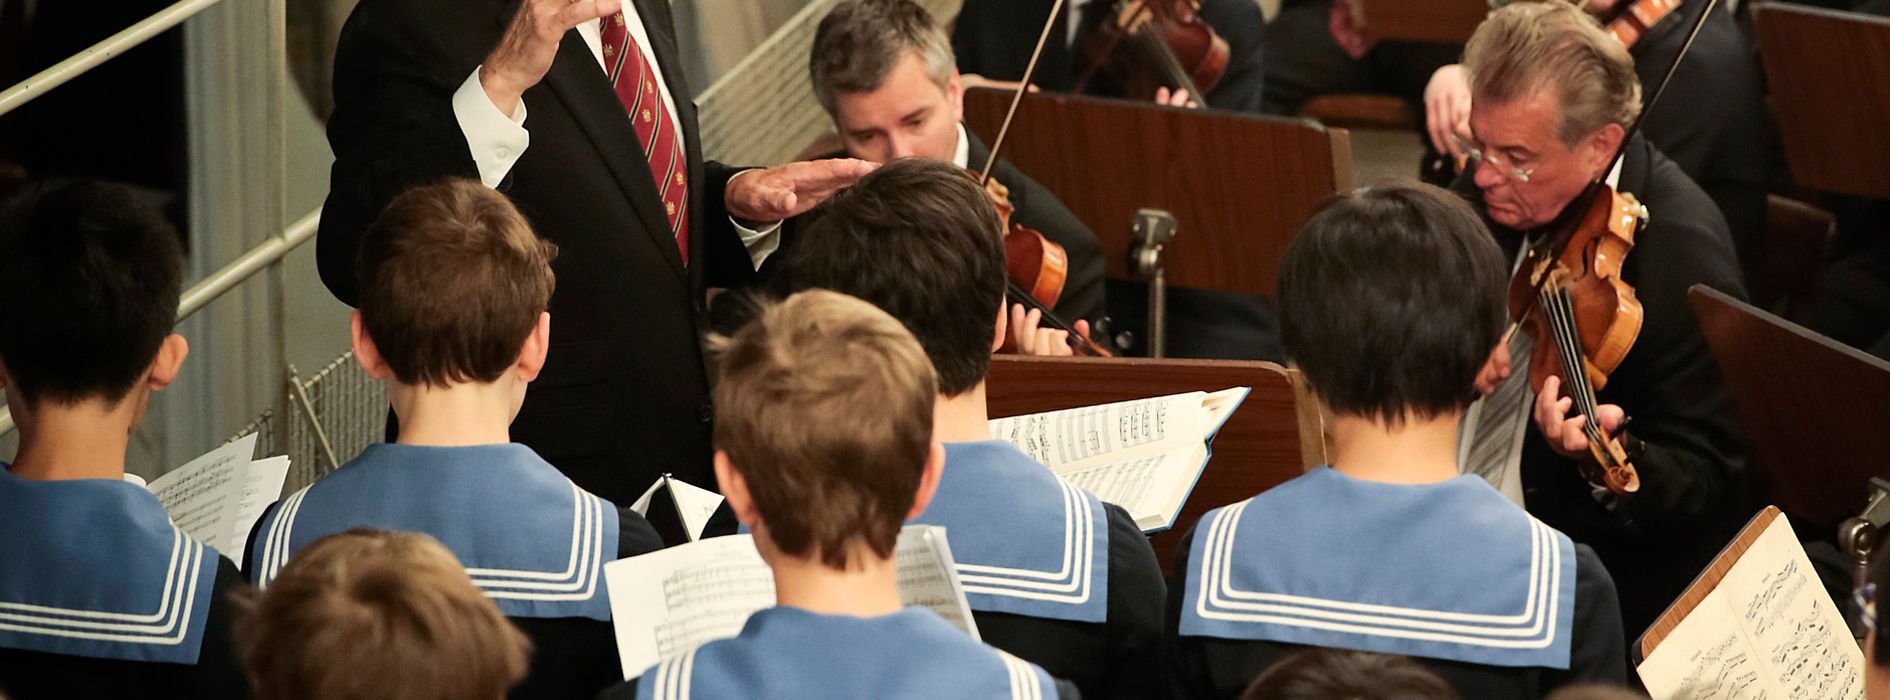 Koncert vídeňského chlapeckého sboru Wiener Sängerknaben v kapli